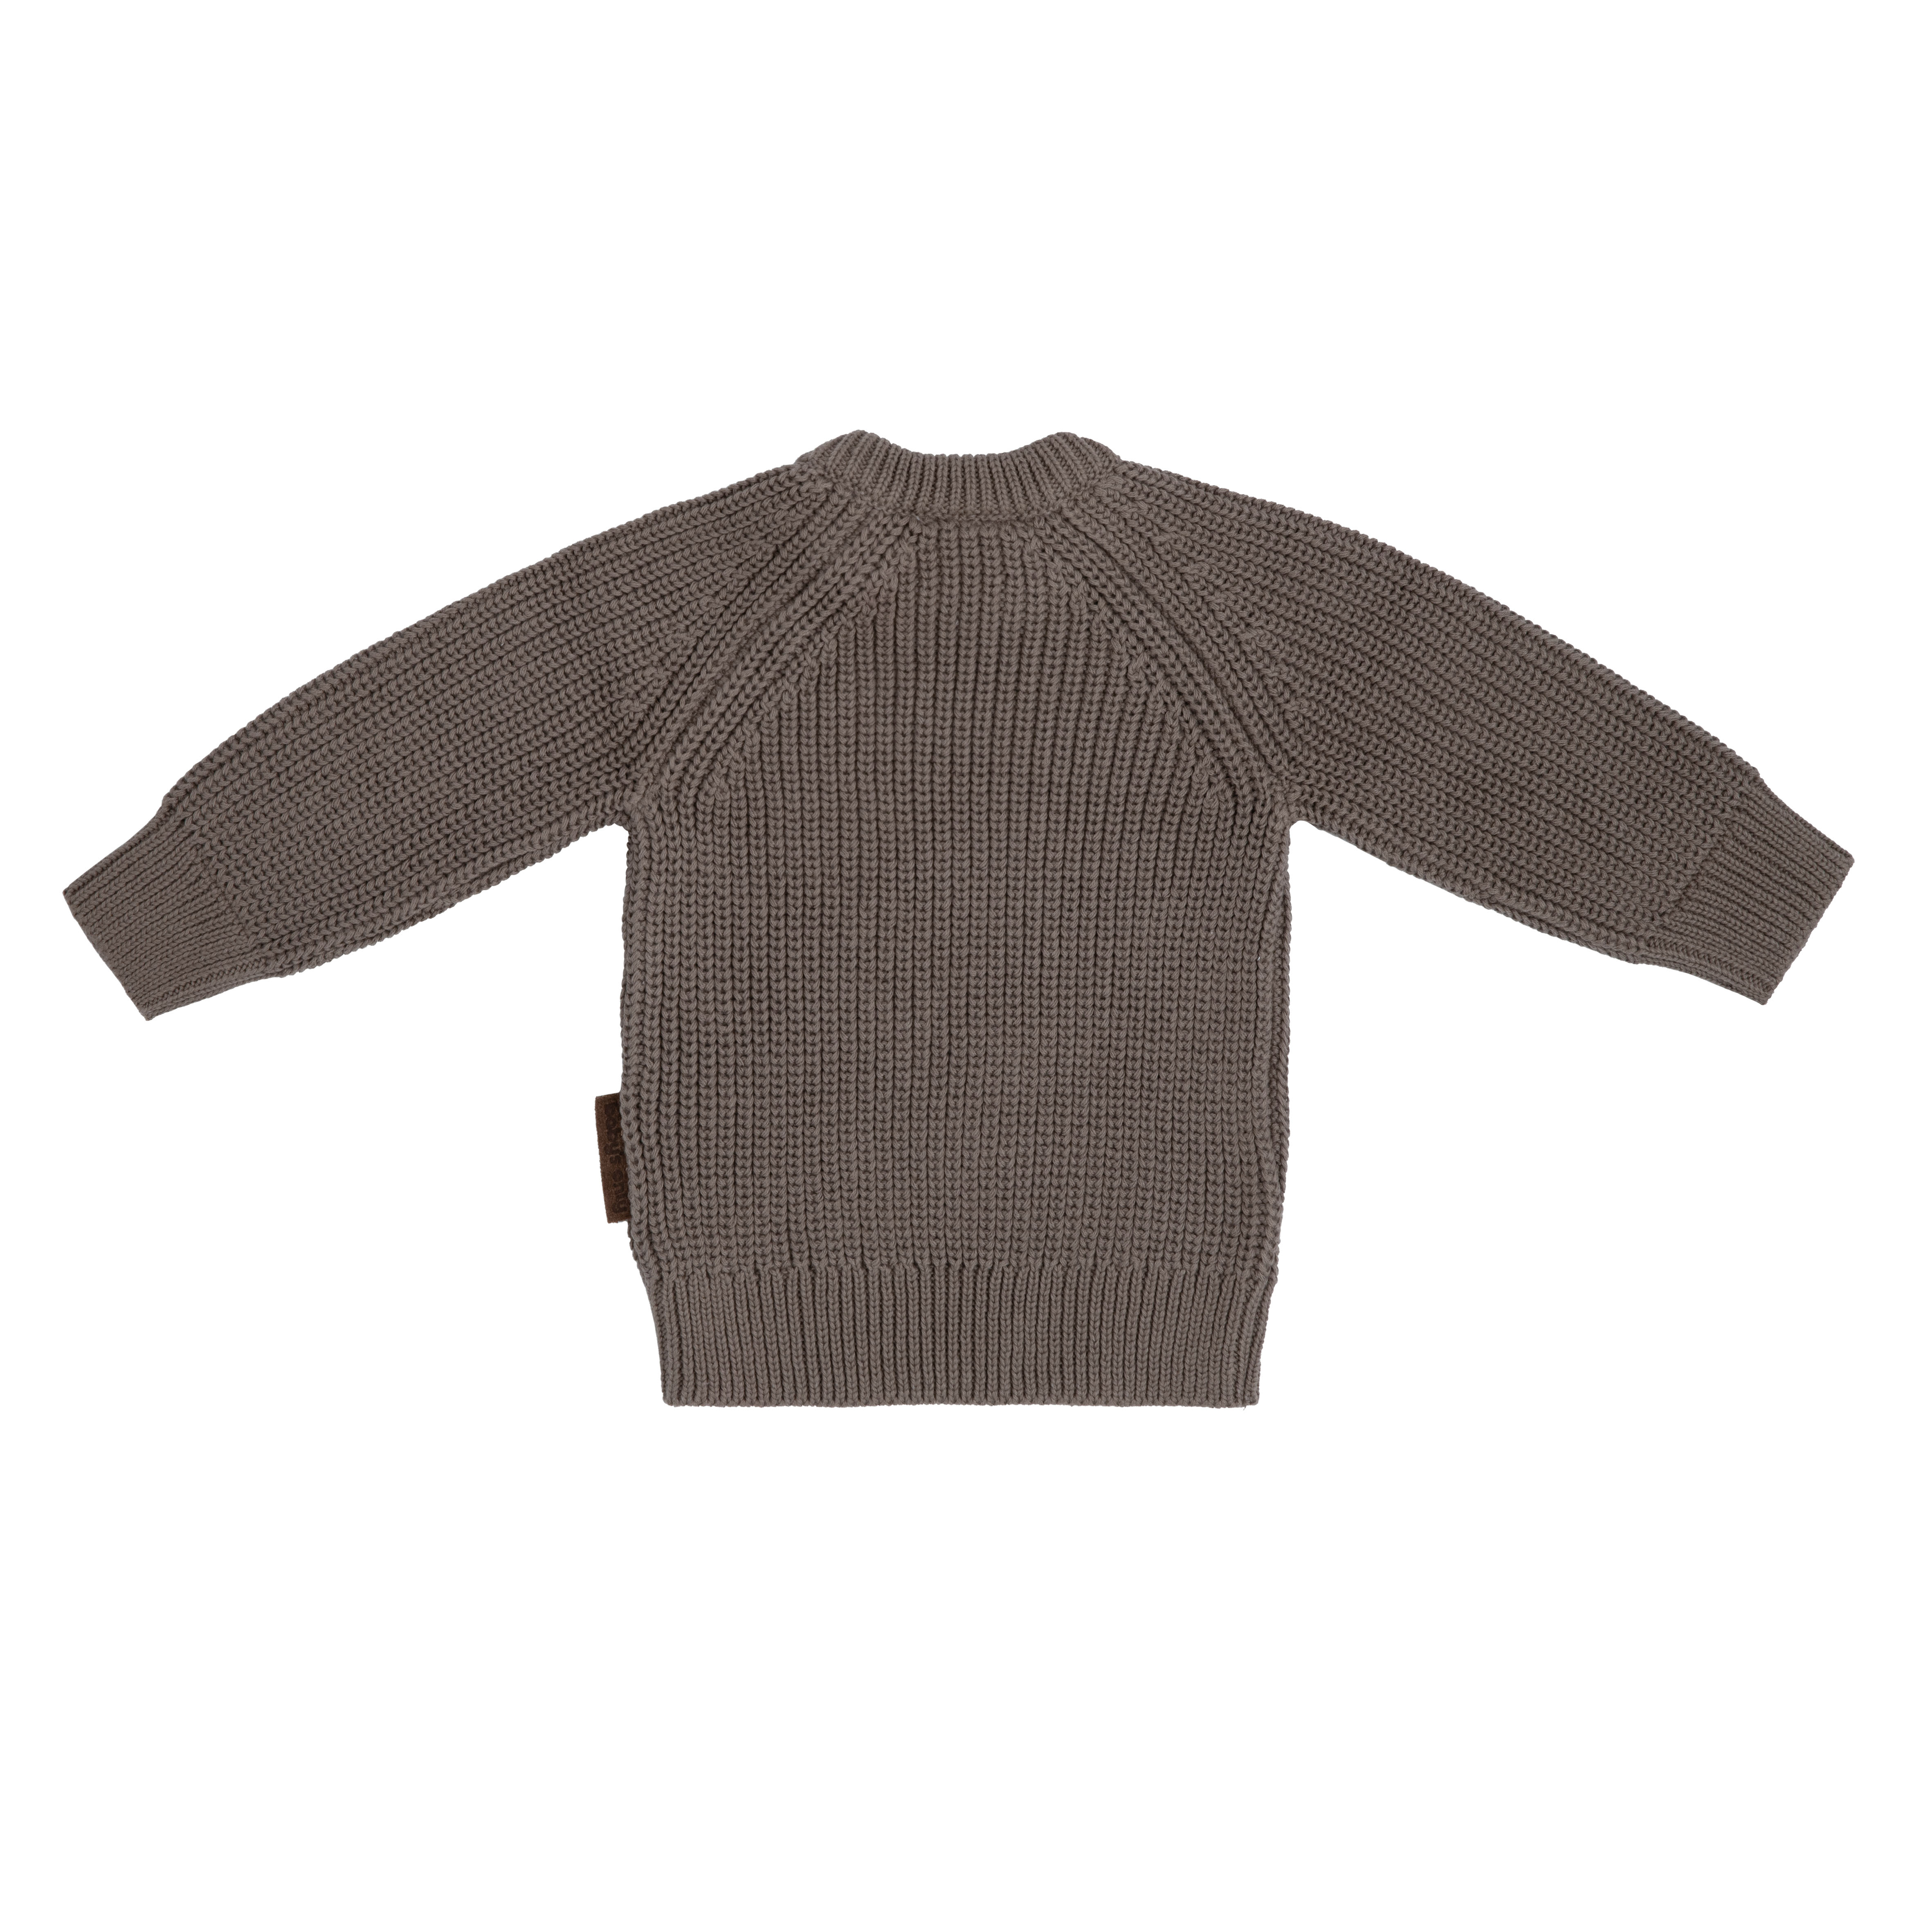 Sweater Soul mocha  - 74